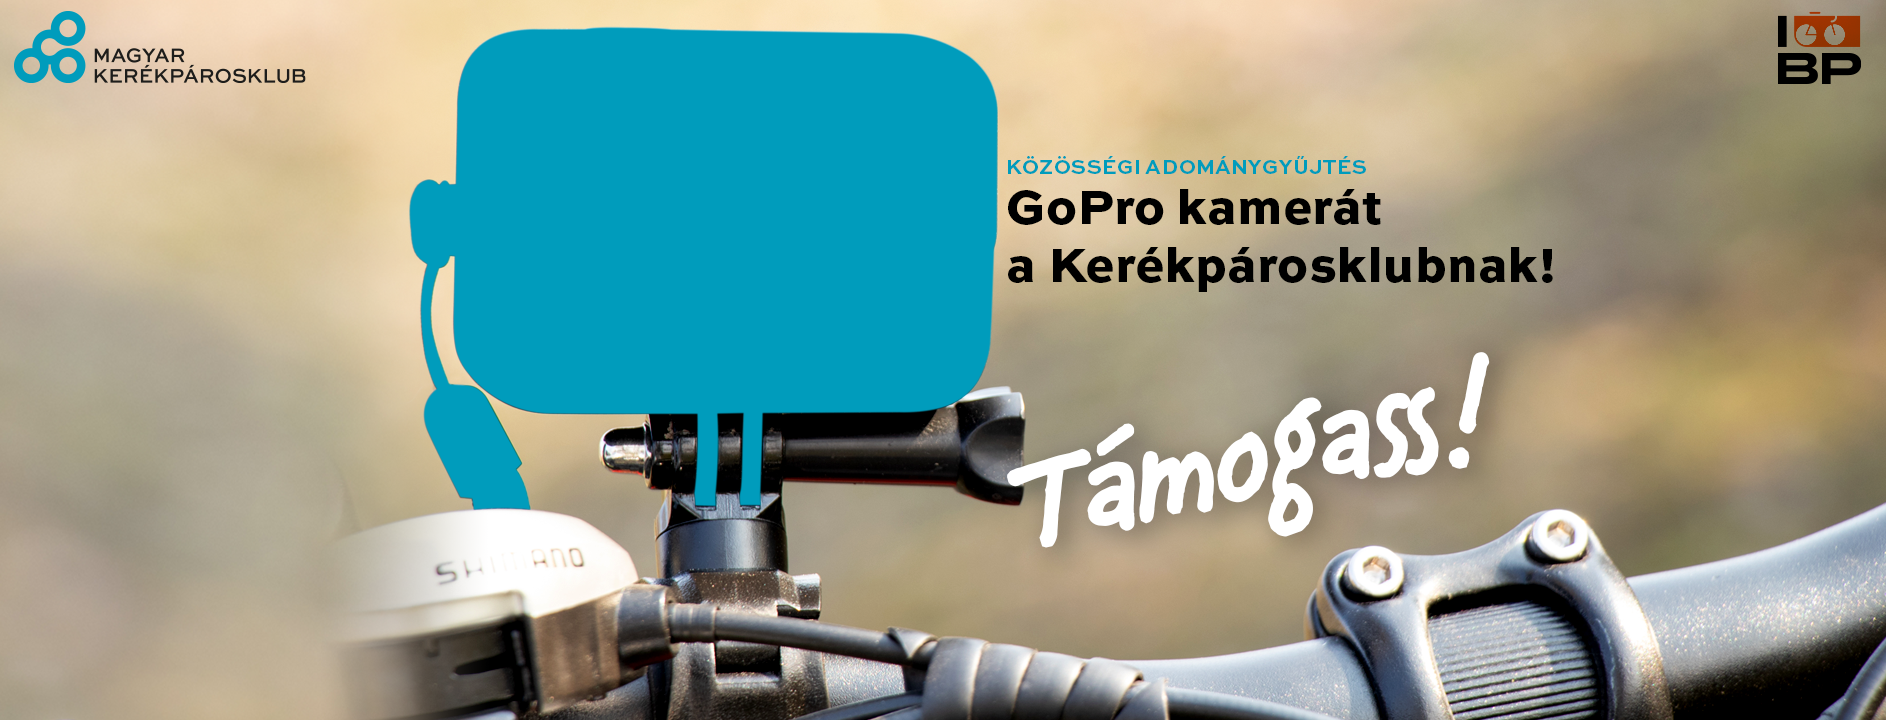 Adománygyűjtő kampány: GoPro kamerát a Kerékpárosklubnak!